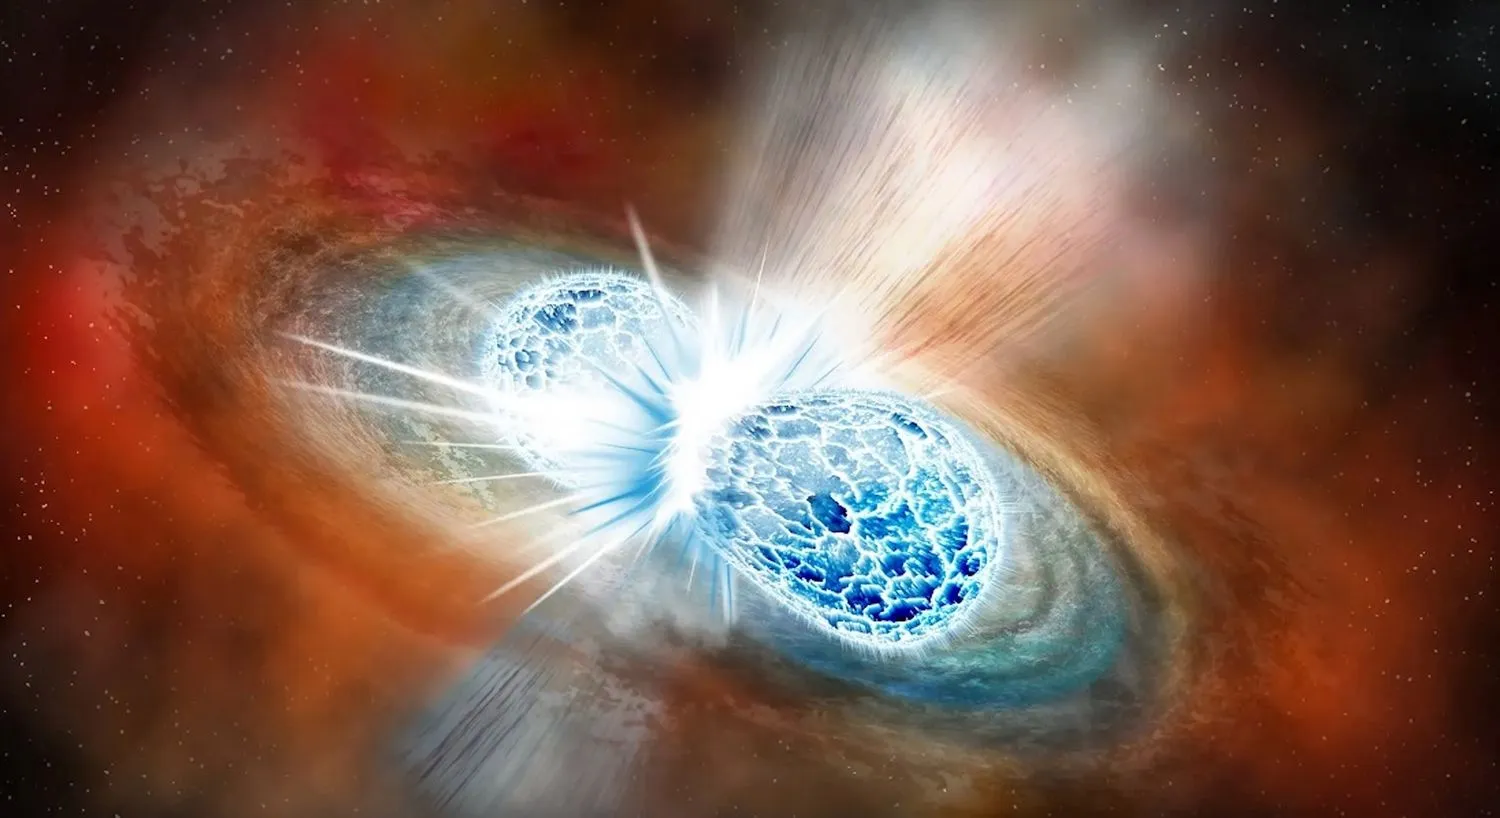 Eine Illustration zweier Neutronensterne, die kollidieren und verschmelzen, um eine Kilonovaexplosion zu erzeugen.